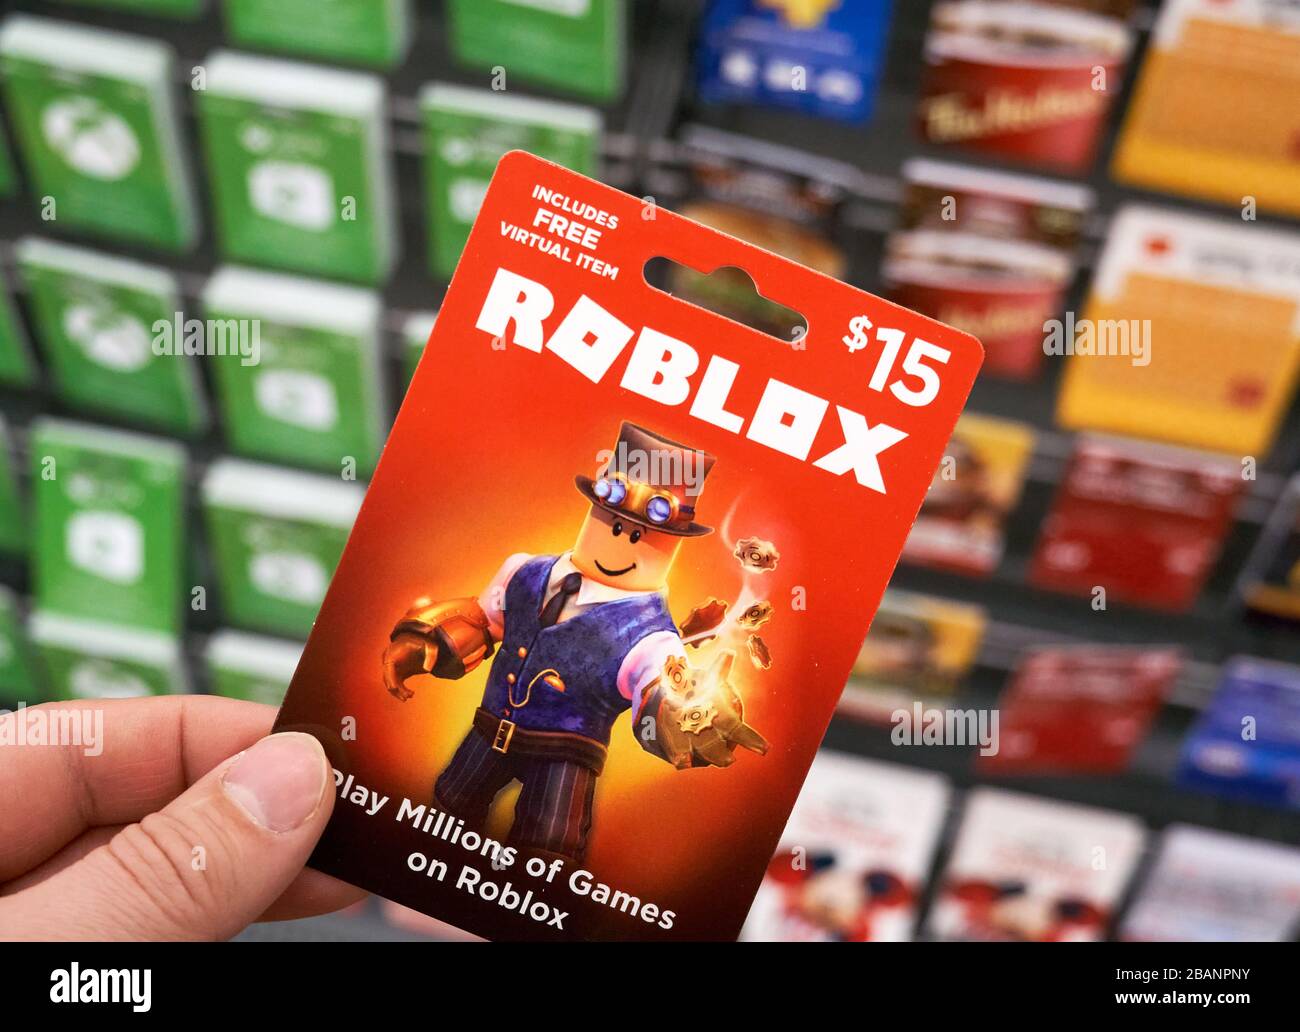 Roblox Game Immagini E Fotos Stock Alamy - immagini di roblox